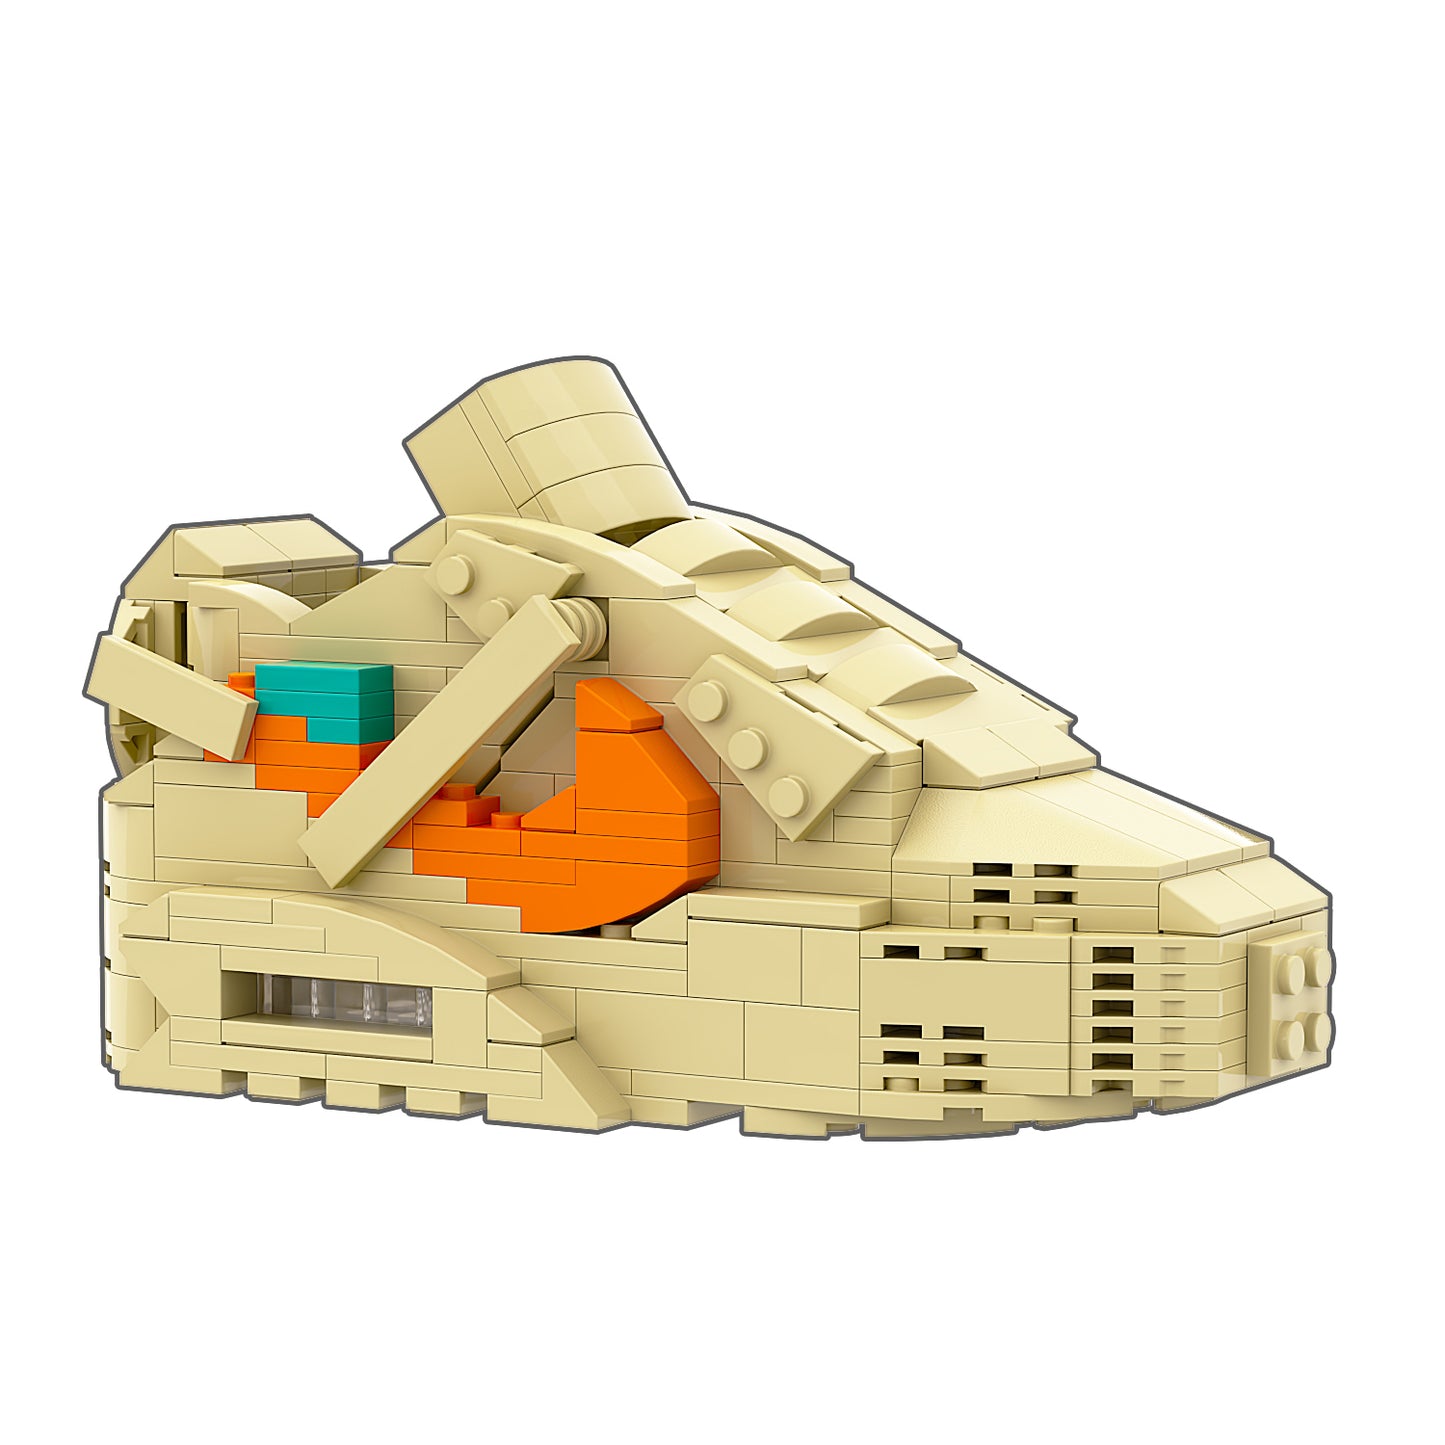 REGULAR Air Max 90 "Desert Ore" Sneaker Bricks with Mini Figure